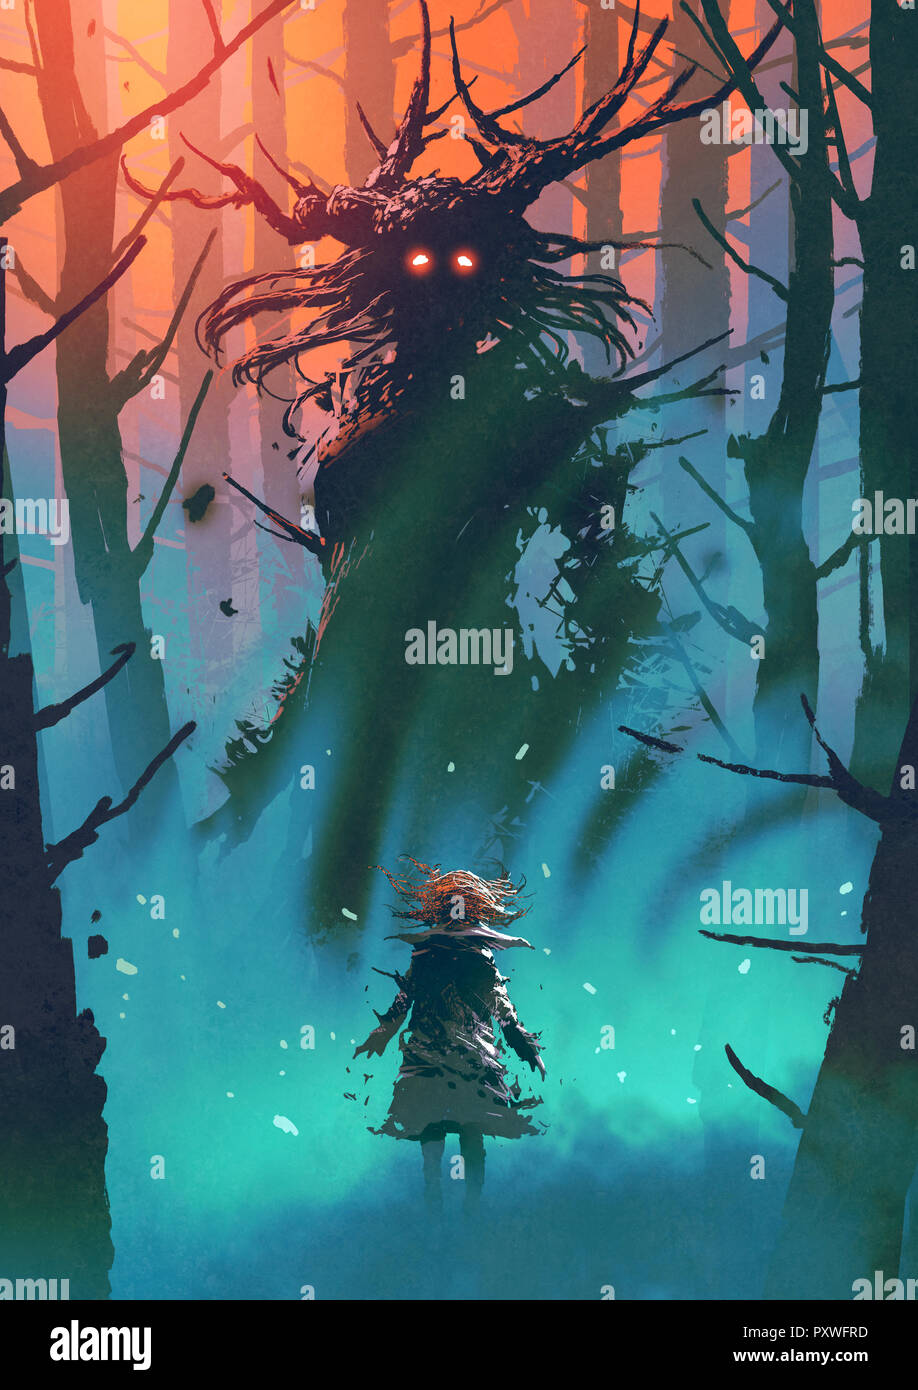 Petite fille et la sorcière à l'autre dans une forêt, art numérique, peinture style illustration Banque D'Images